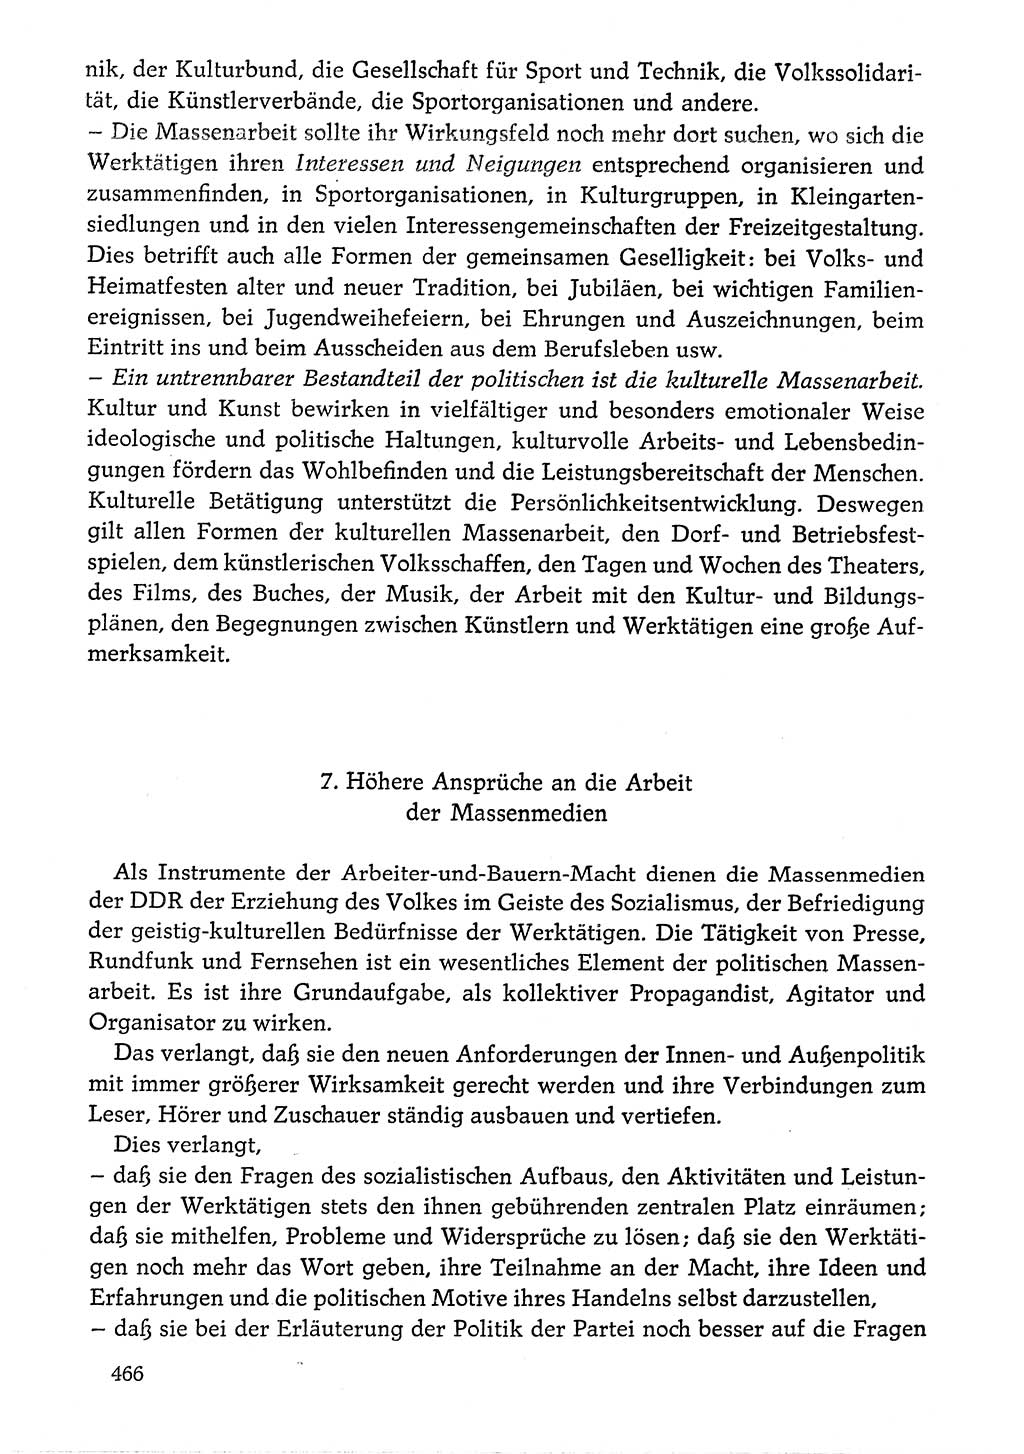 Dokumente der Sozialistischen Einheitspartei Deutschlands (SED) [Deutsche Demokratische Republik (DDR)] 1976-1977, Seite 466 (Dok. SED DDR 1976-1977, S. 466)